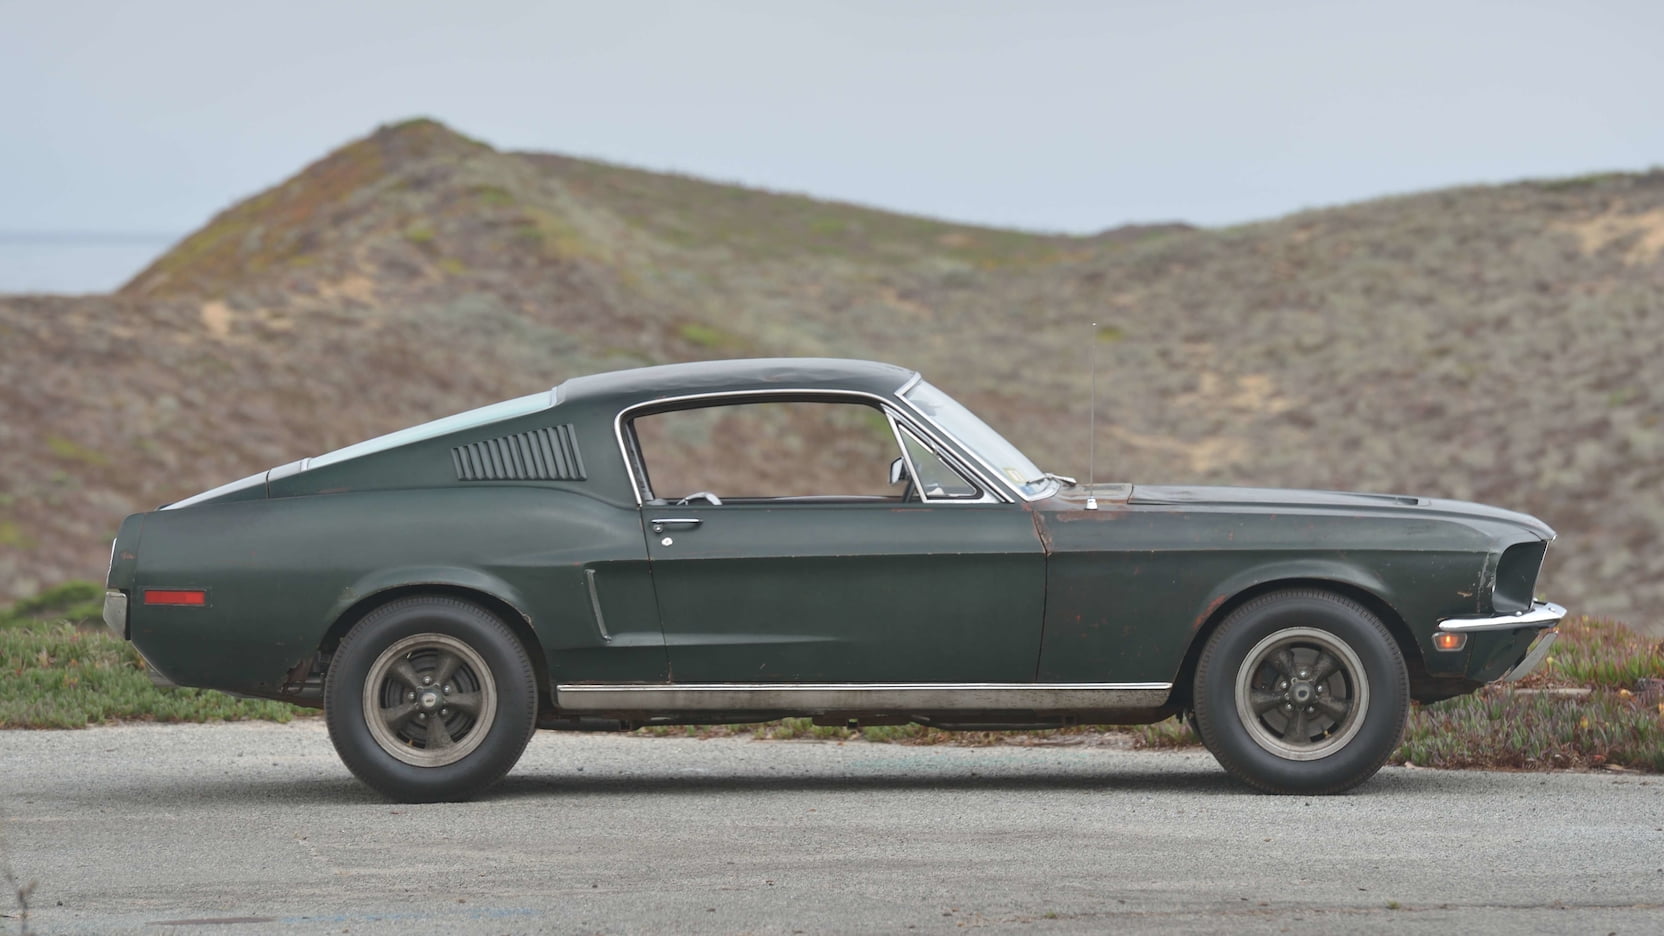 1968 Ford Mustang GT 390 Fastback Bullitt Steve McQueen $3.74-million Mecum Kissimmee